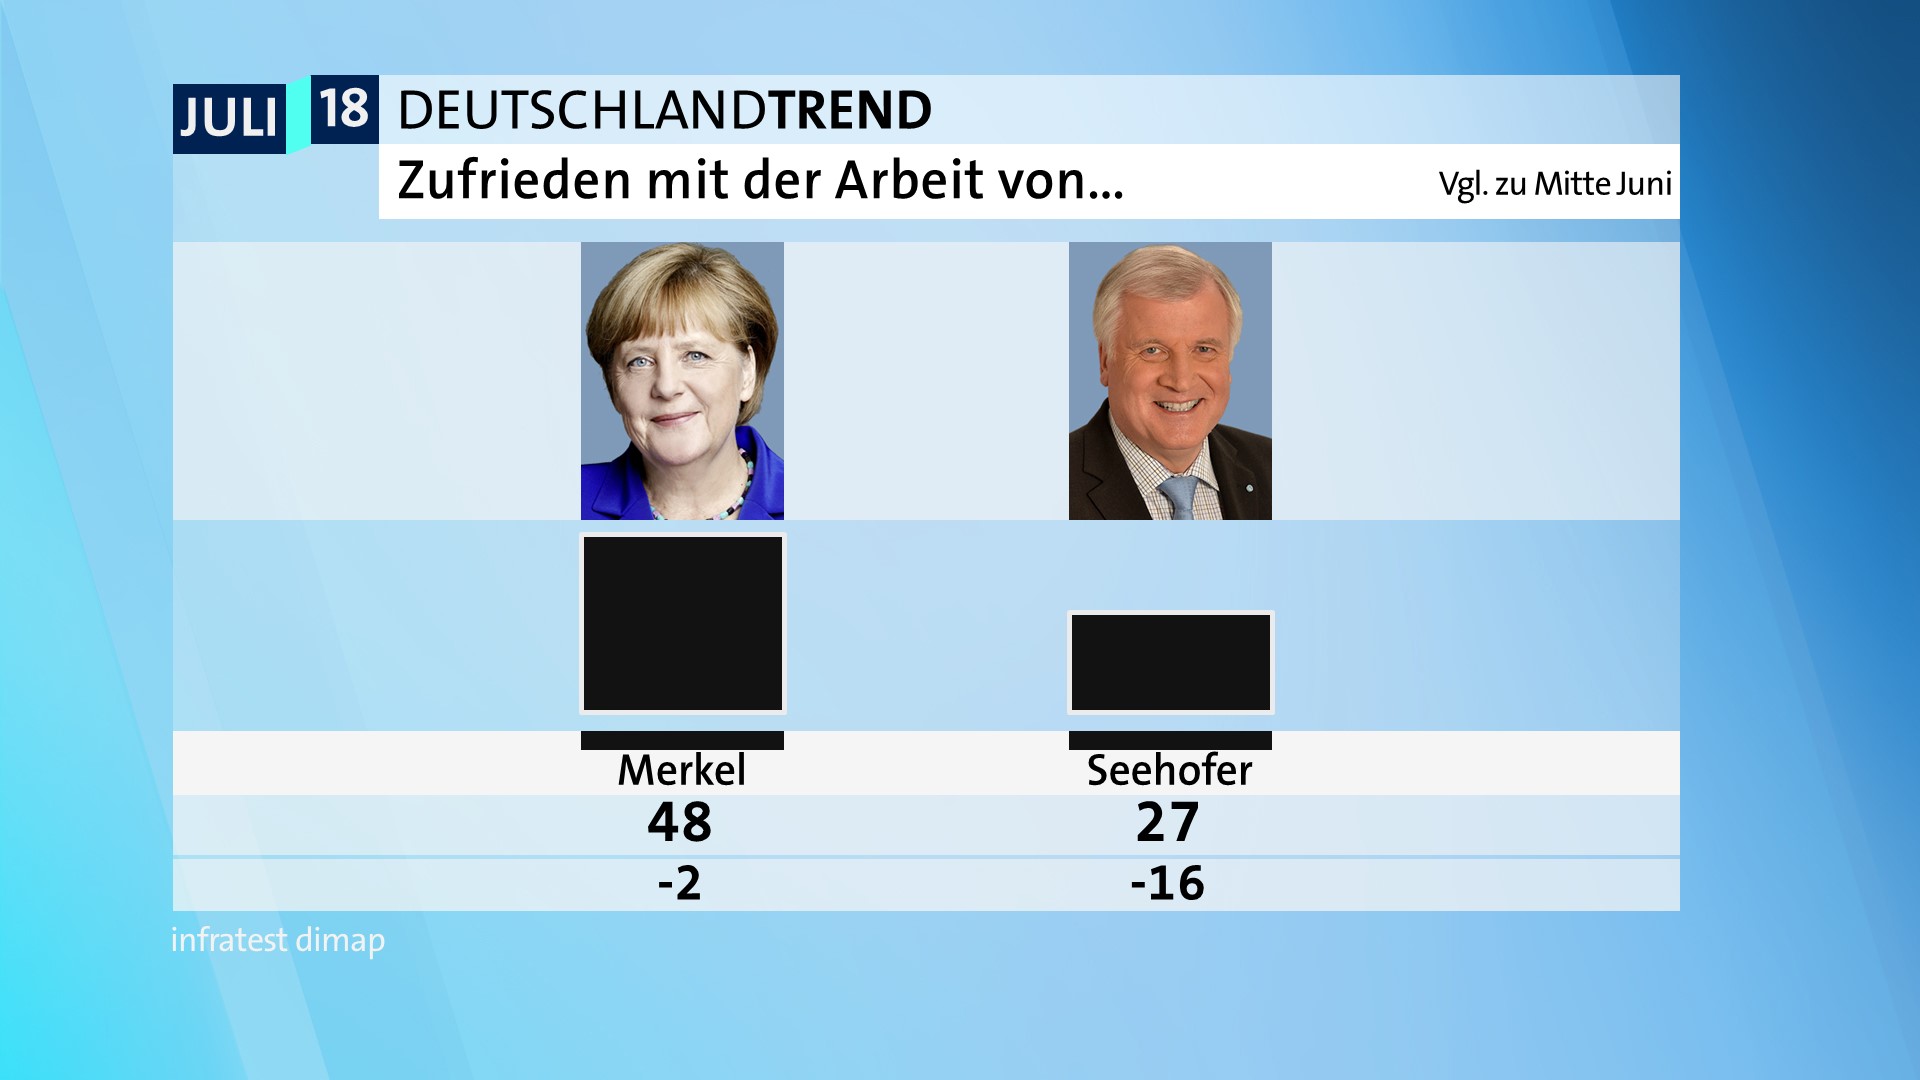 DeutschlandTrend: Zufriedenheit mit der Arbeit von Merkel und Seehofer